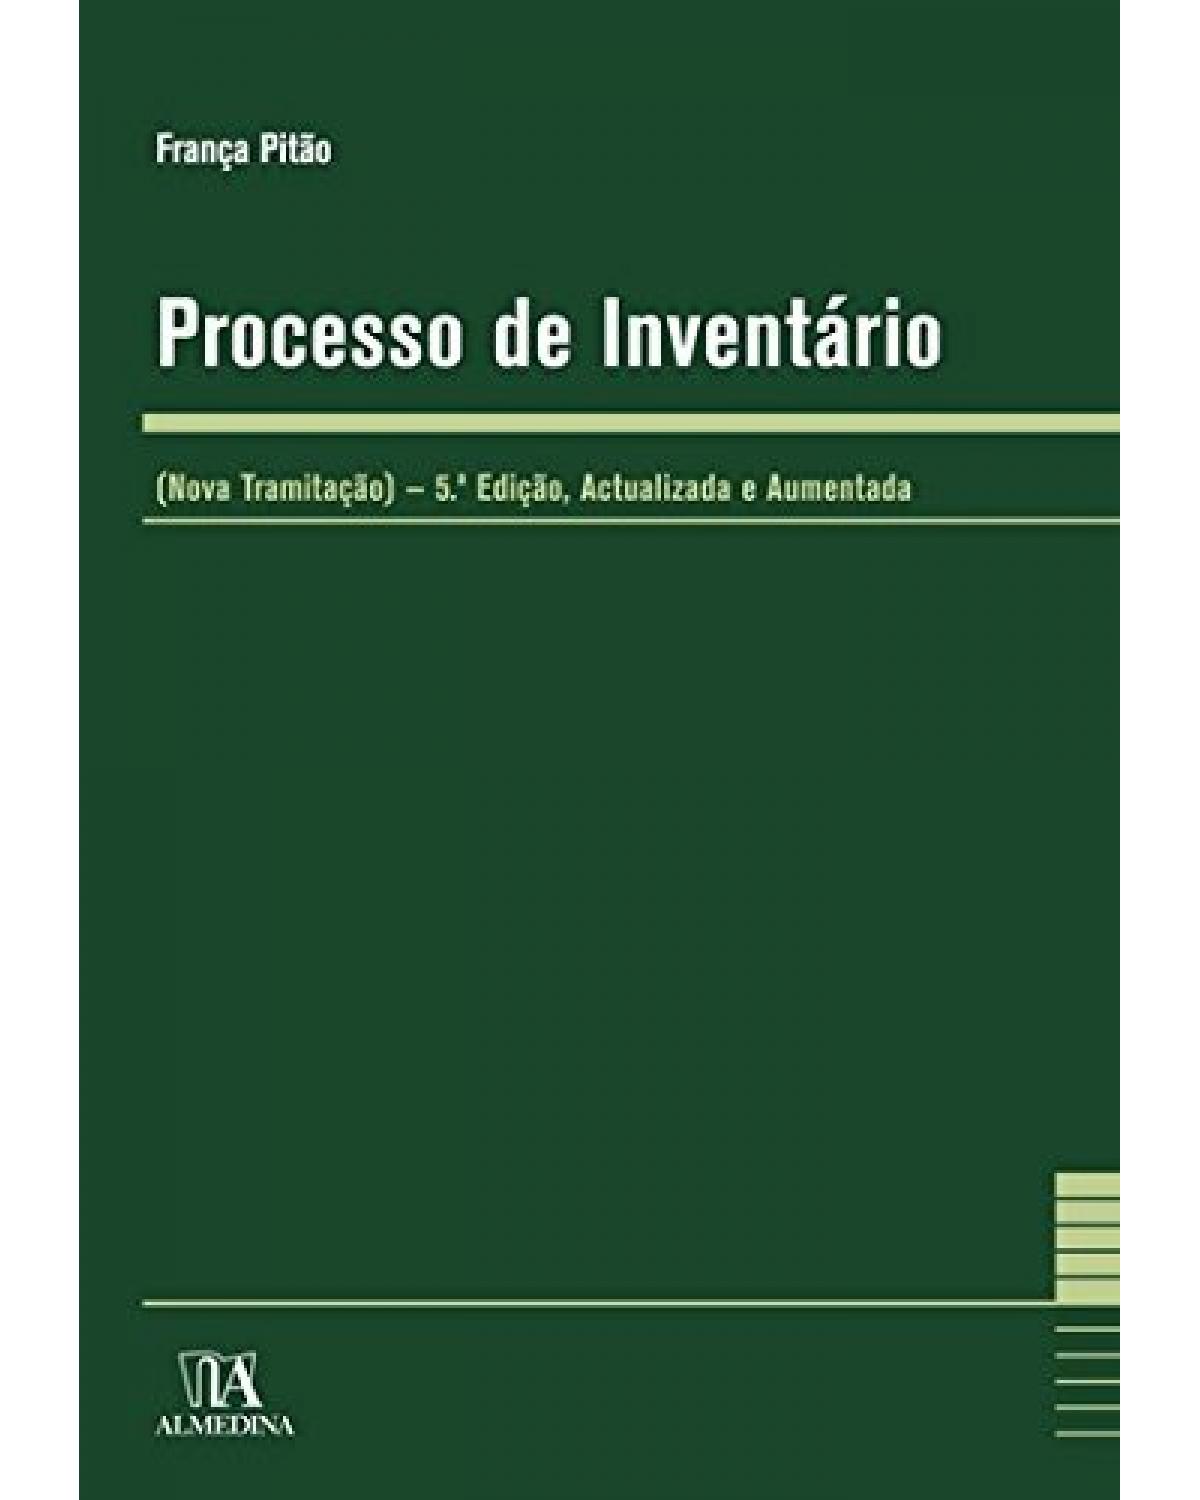 Processo de inventário - (nova tramitação) - 5ª Edição | 2008